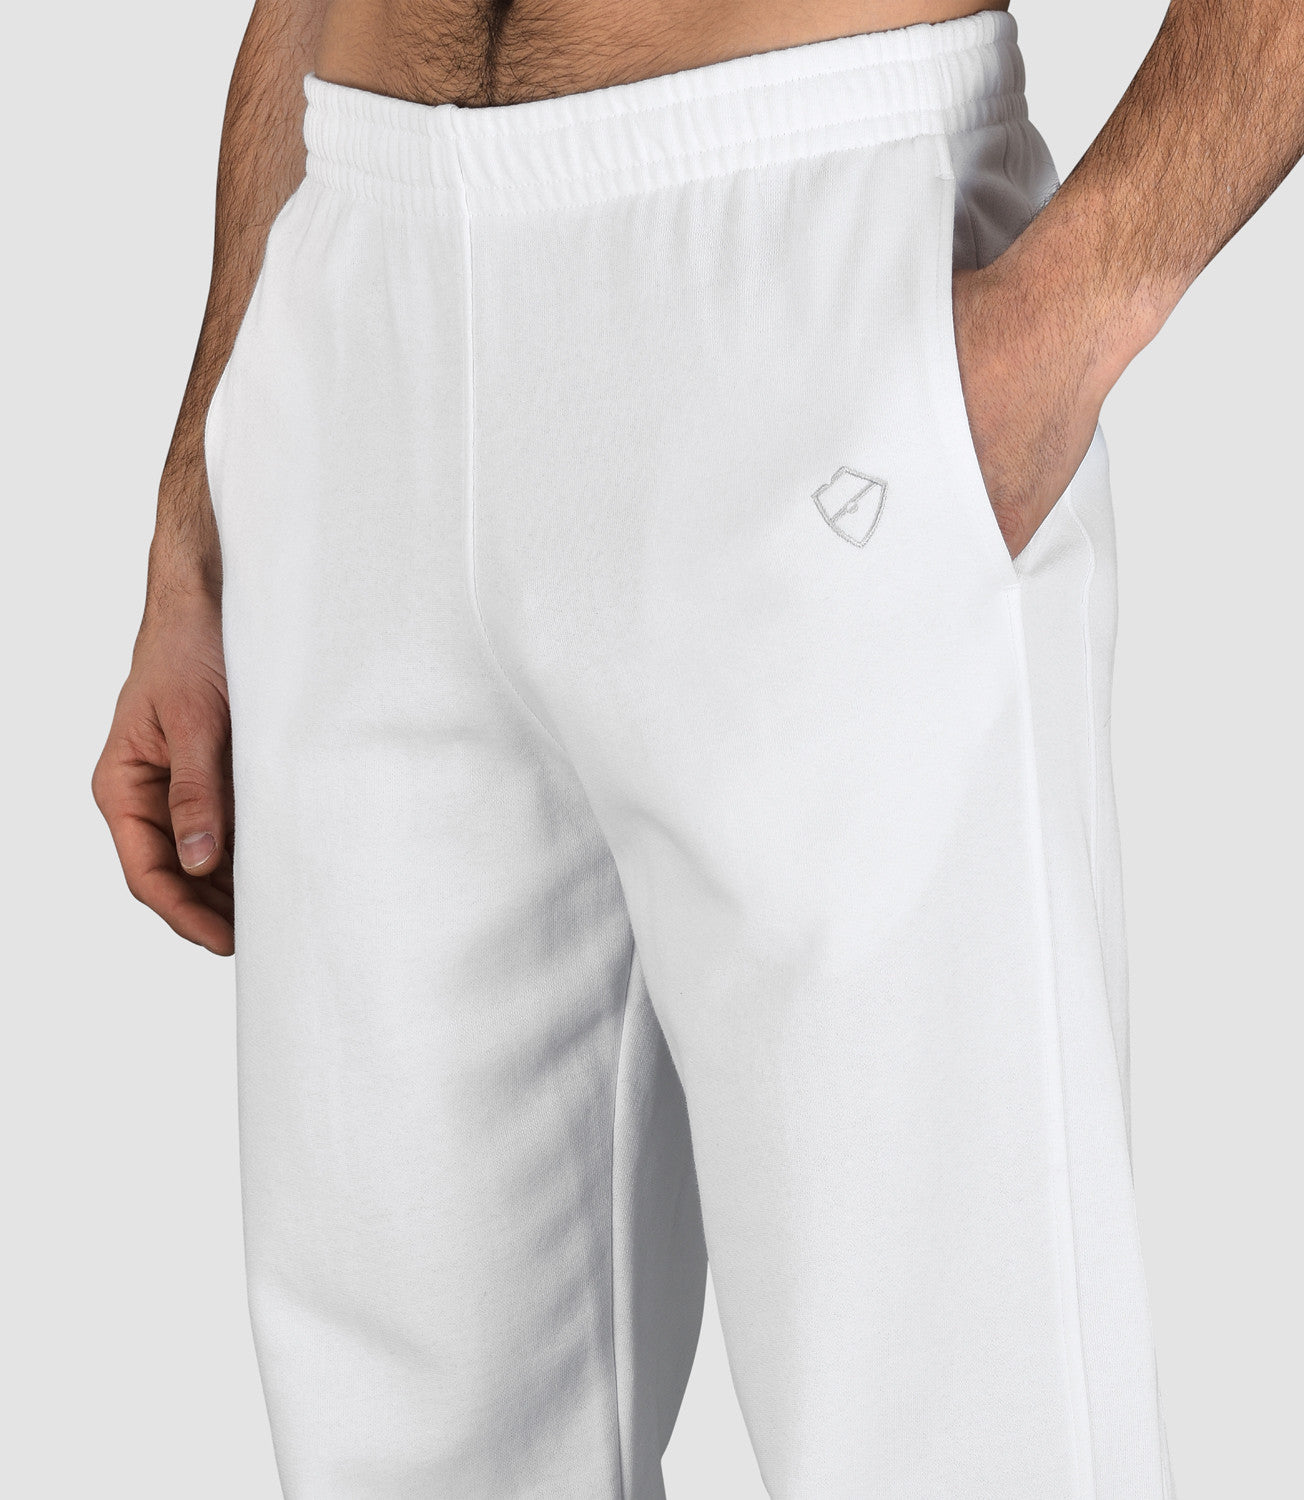 Tennis Trousers Pants Men's-Dexter Cotton Pant-Black-S-PlayBrave Sports UK